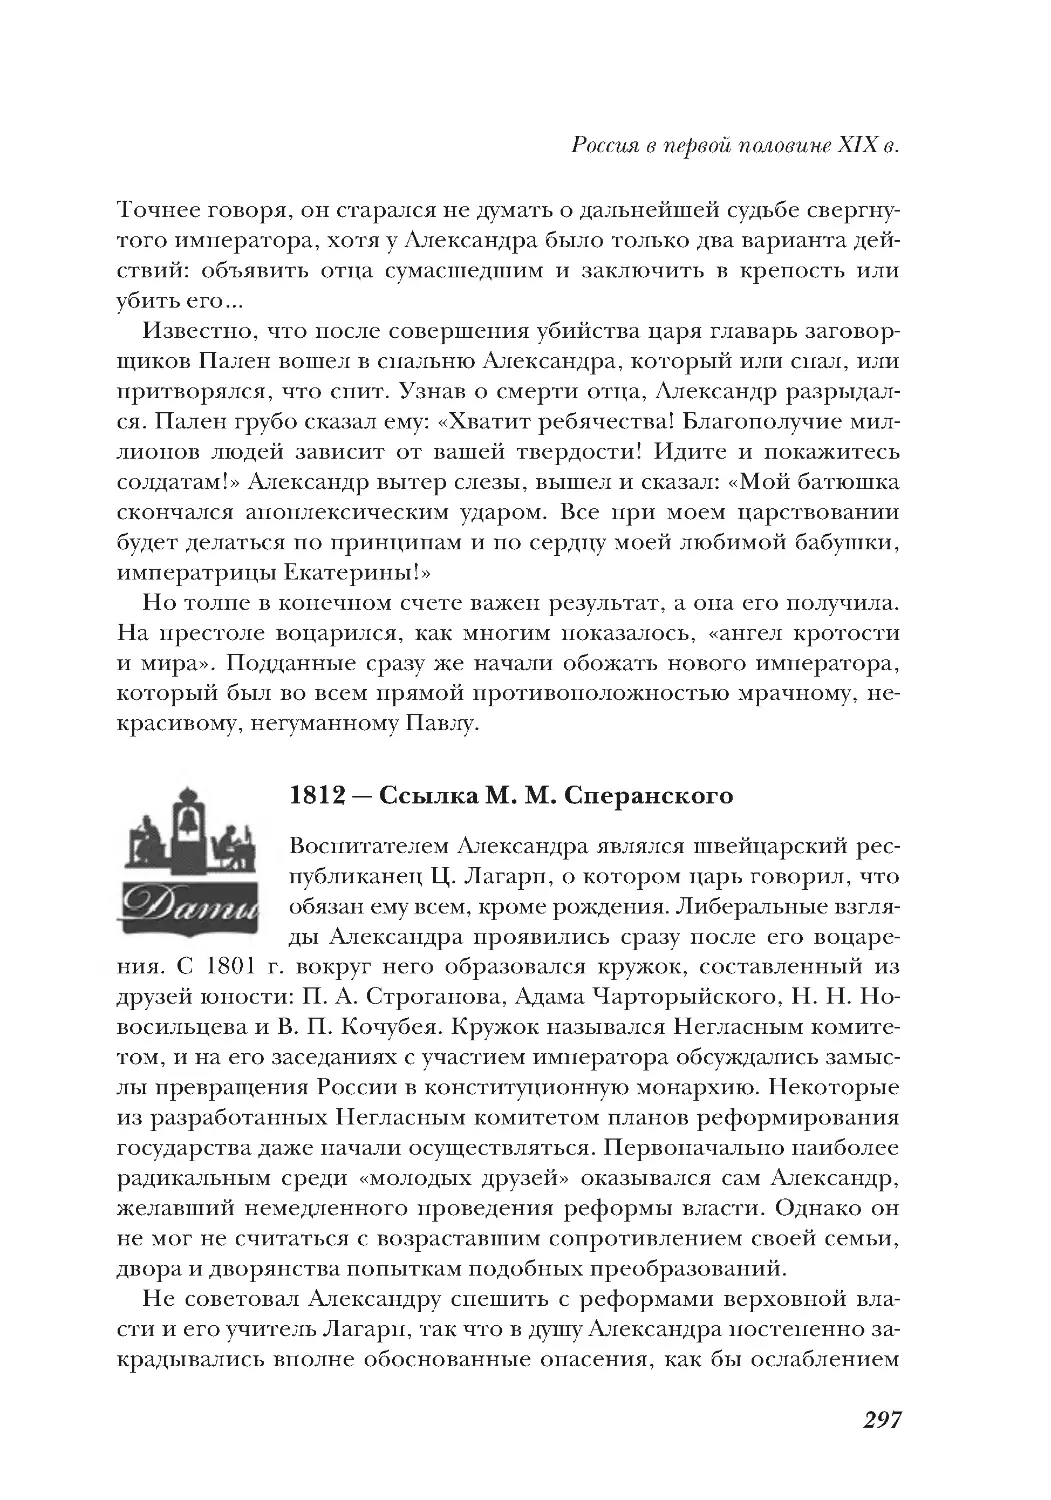 1812 — Ссылка М. М. Сперанского